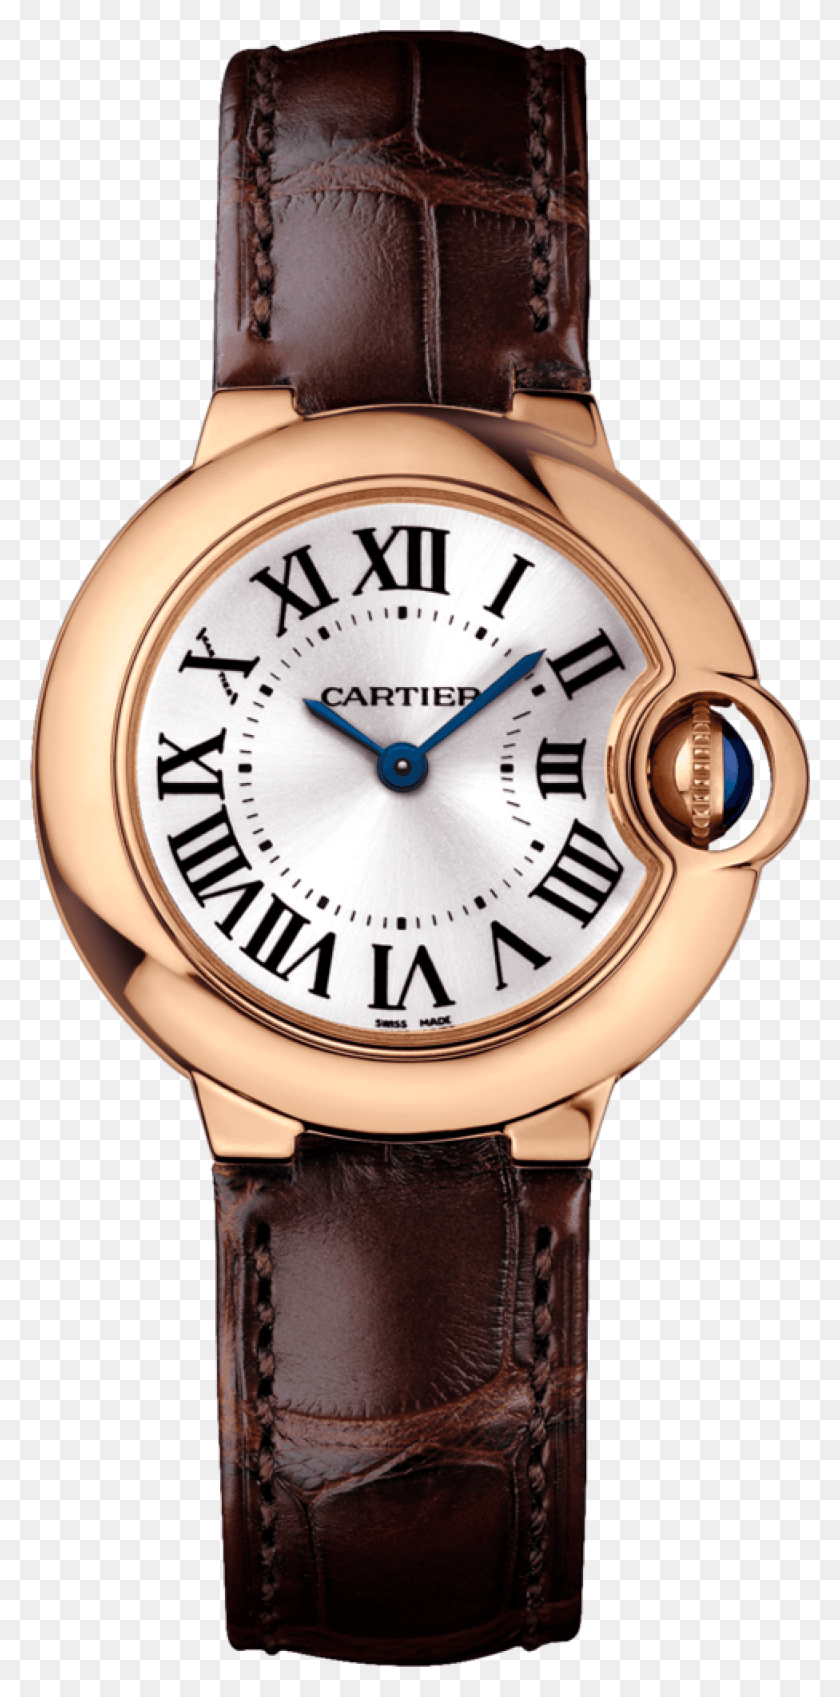 1999x4196 Cartier Ballon Bleu De Cartier Pink Gold Watch Cartier Ballon Bleu, Wristwatch, Clock Tower, Tower HD PNG Download